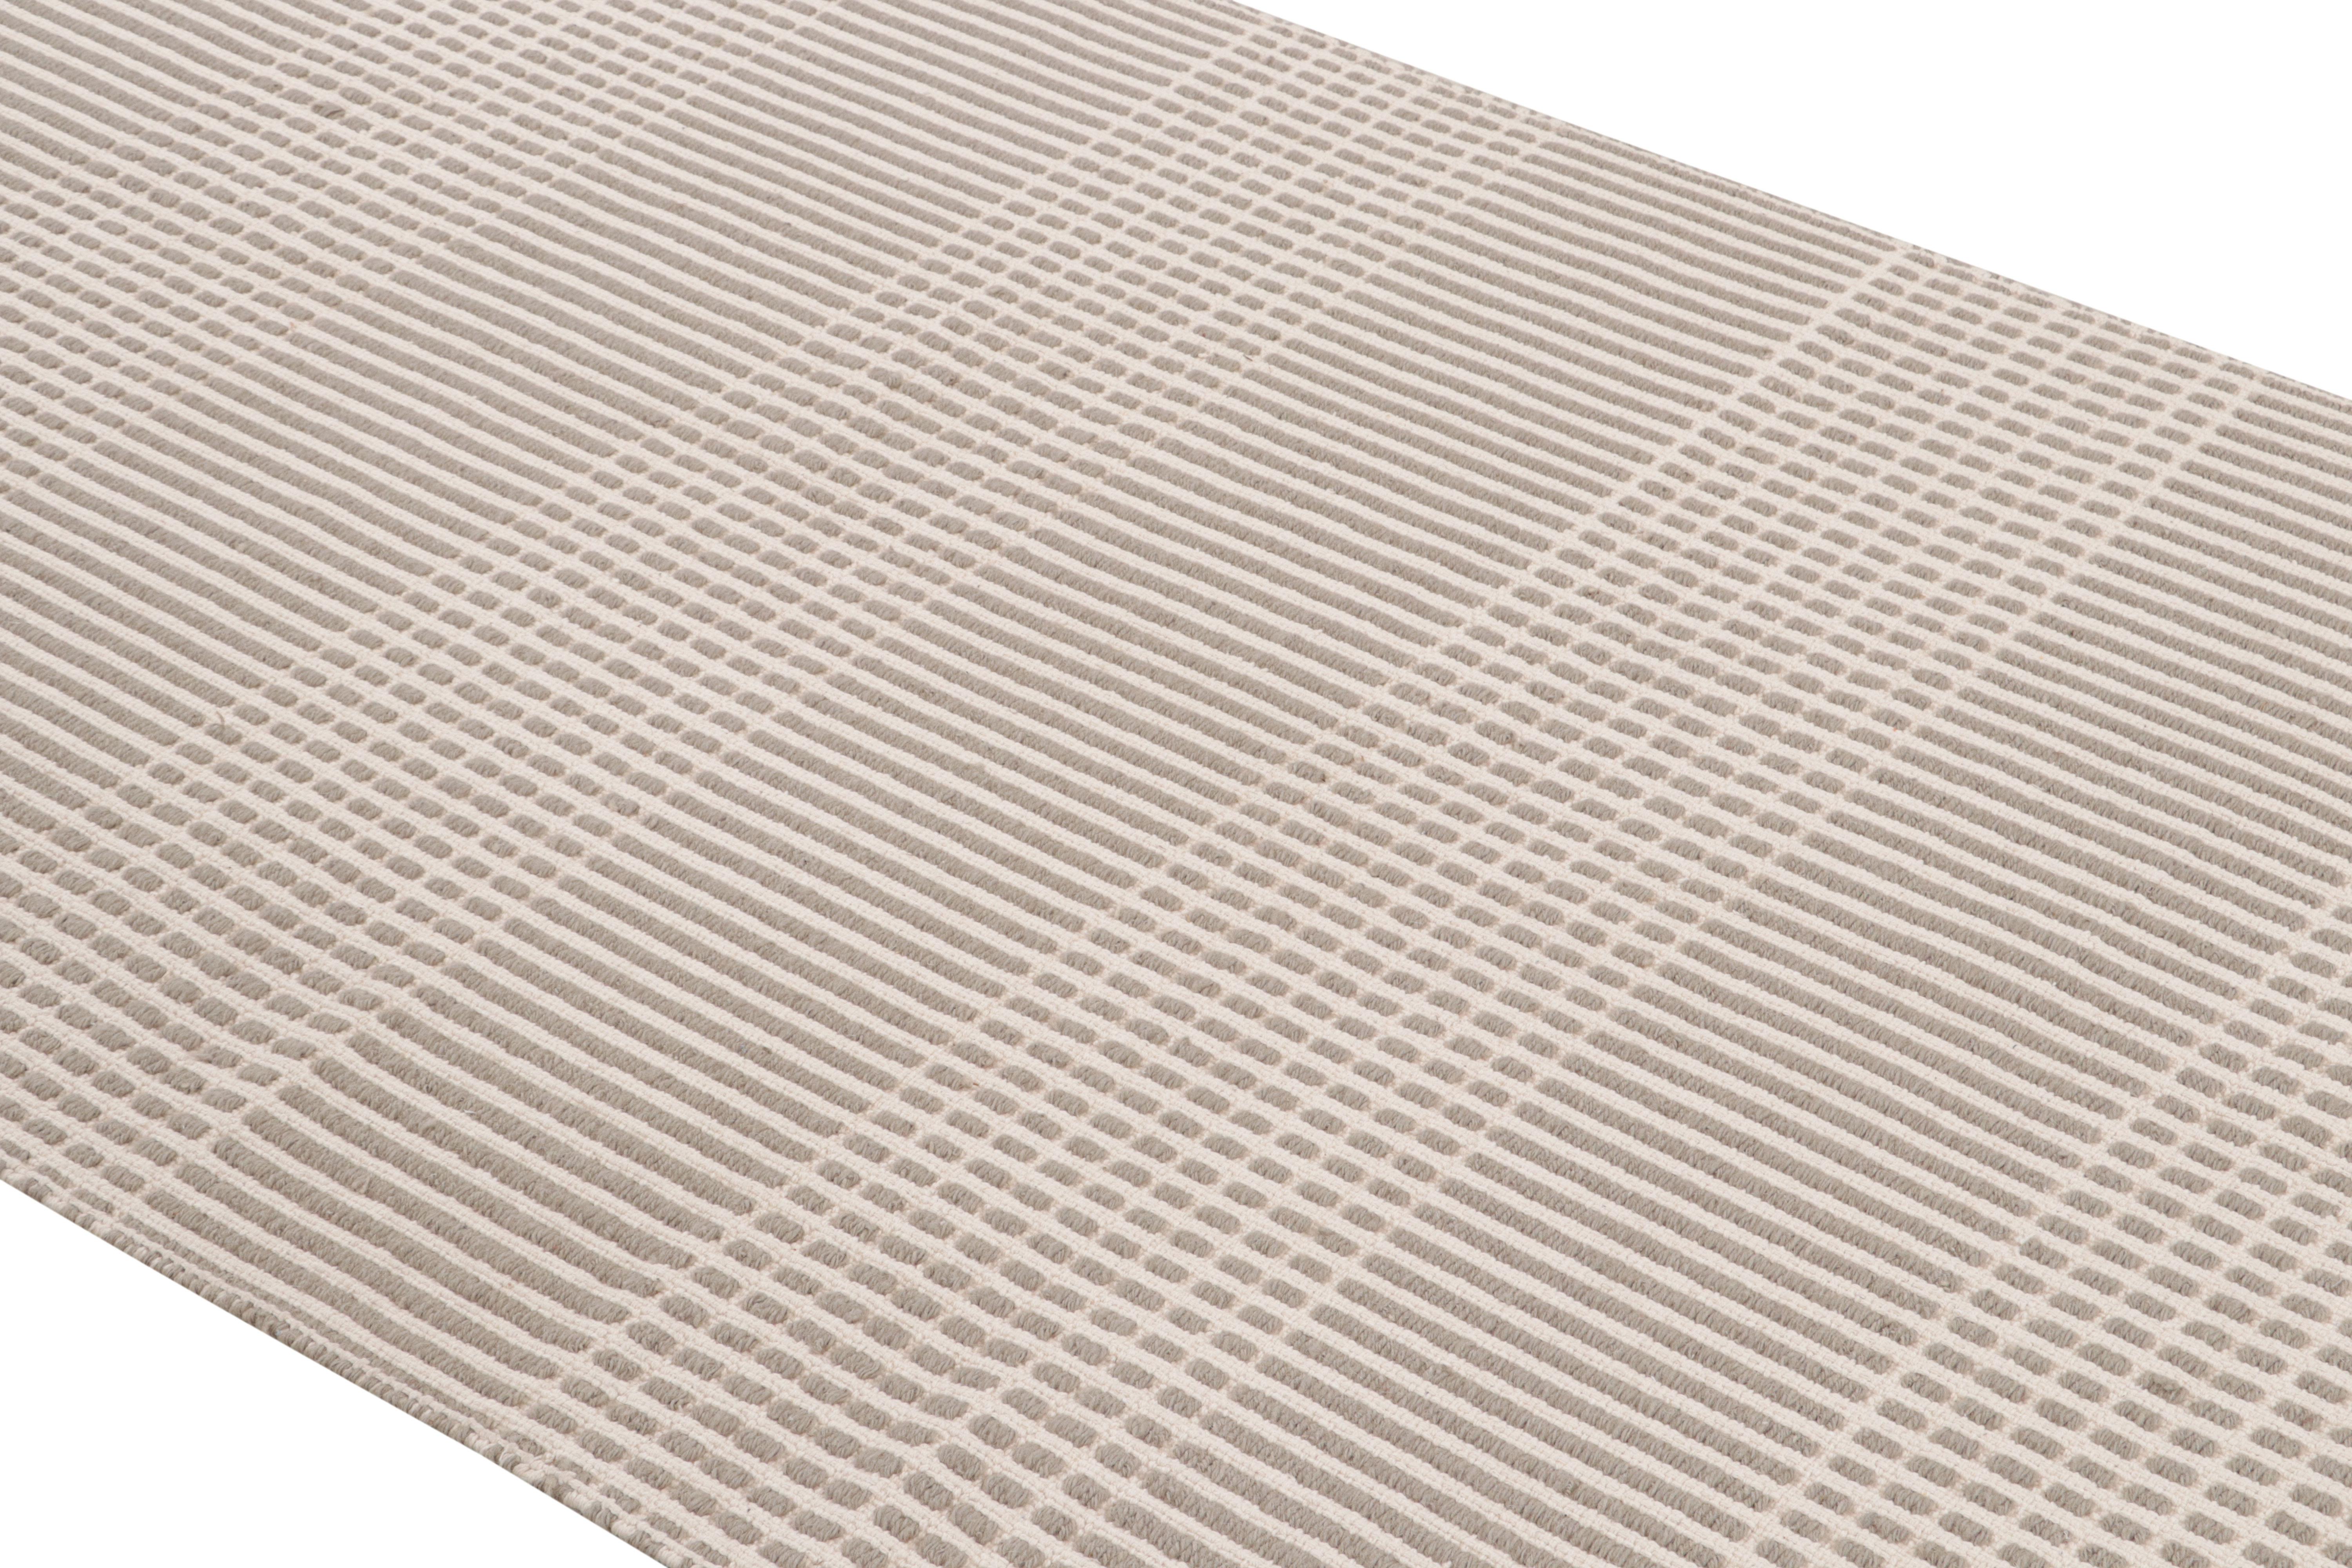 Ce tapis de couloir à tissage plat fait à la main rejoint les ajouts modernes et contemporains de la célèbre collection Kilim & flat-weave de Rug & Kilim tissé à la main dans un mélange d'ourlet et de coton entièrement naturels avec un mariage de